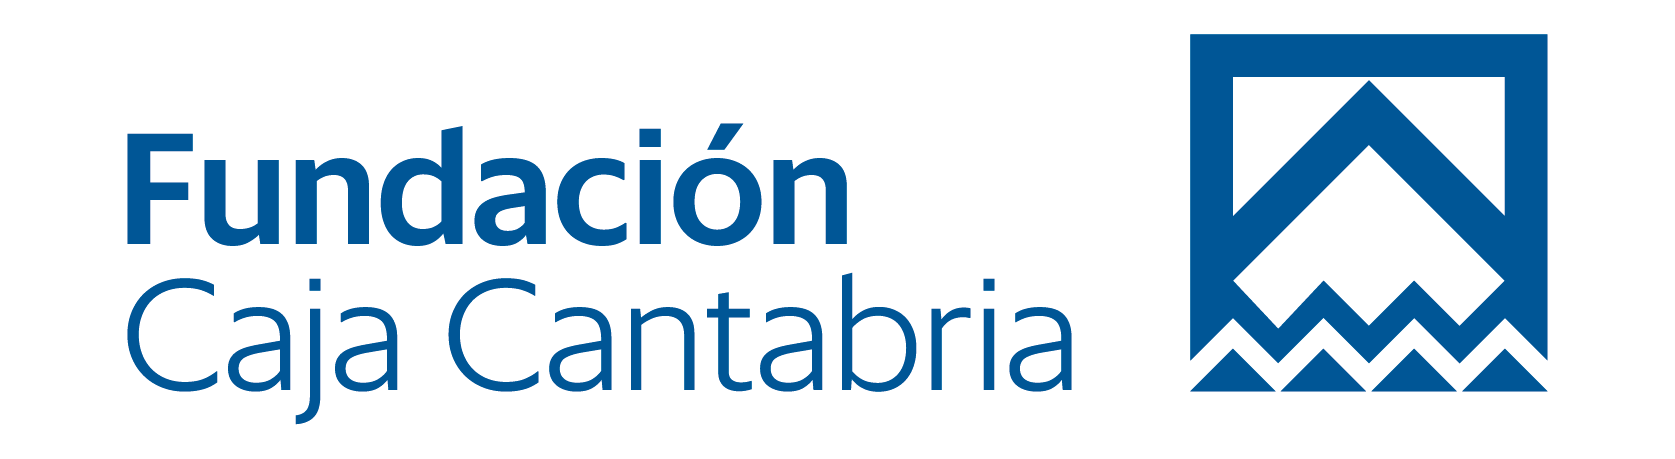 Fundación Bancaria Caja Cantabria